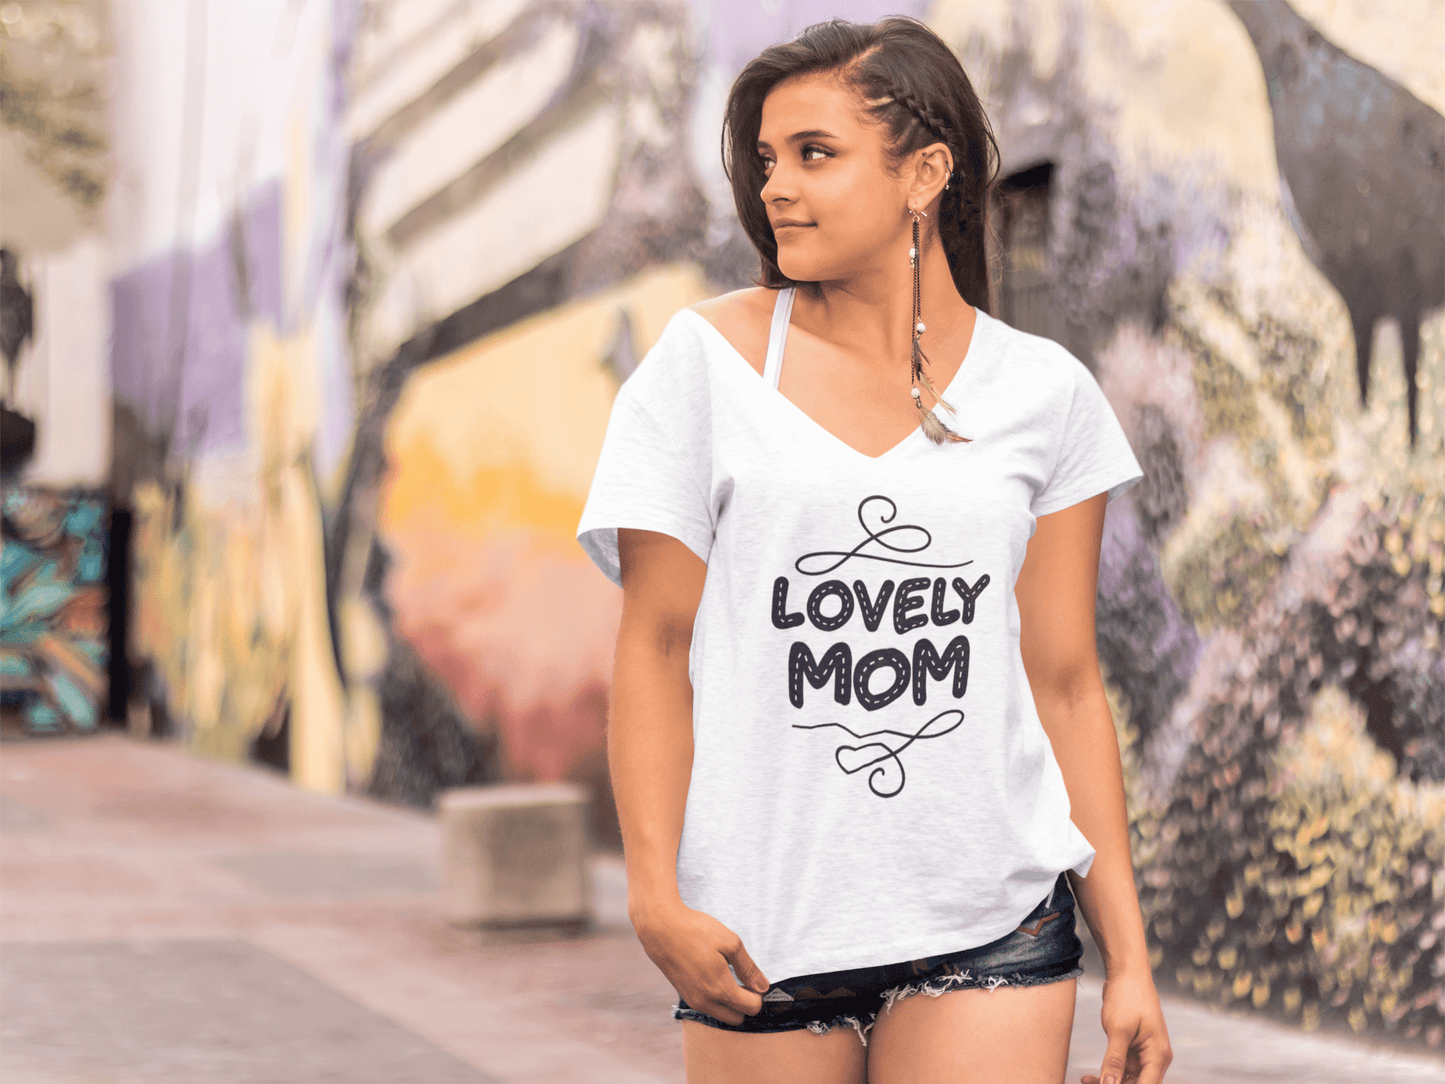 ULTRABASIC Women's T-Shirt Lovely Mom - Short Sleeve Tee Shirt Tops